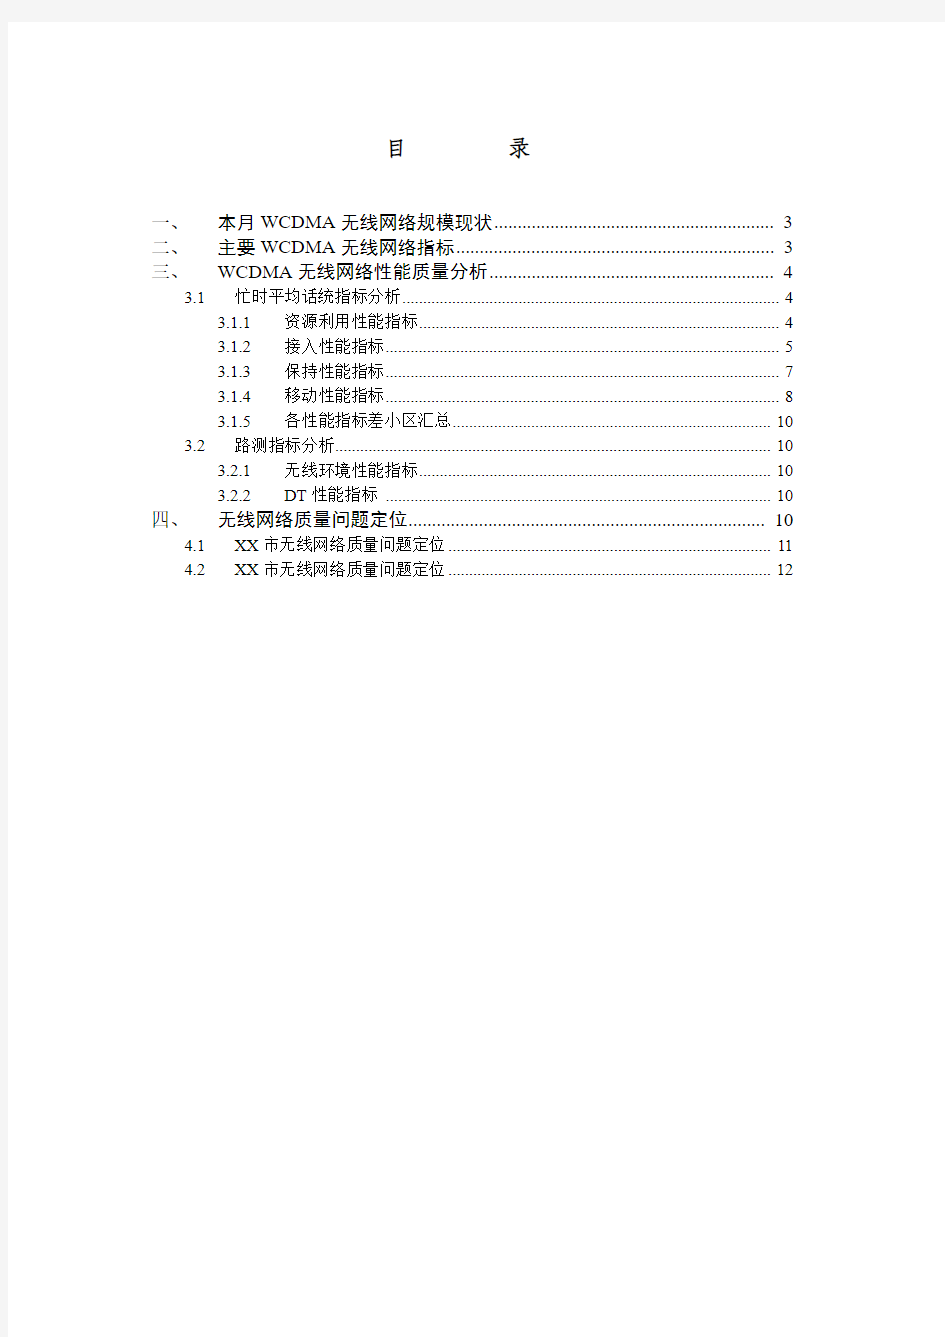 中国联通WCDMA无线网络质量分析双周报模板